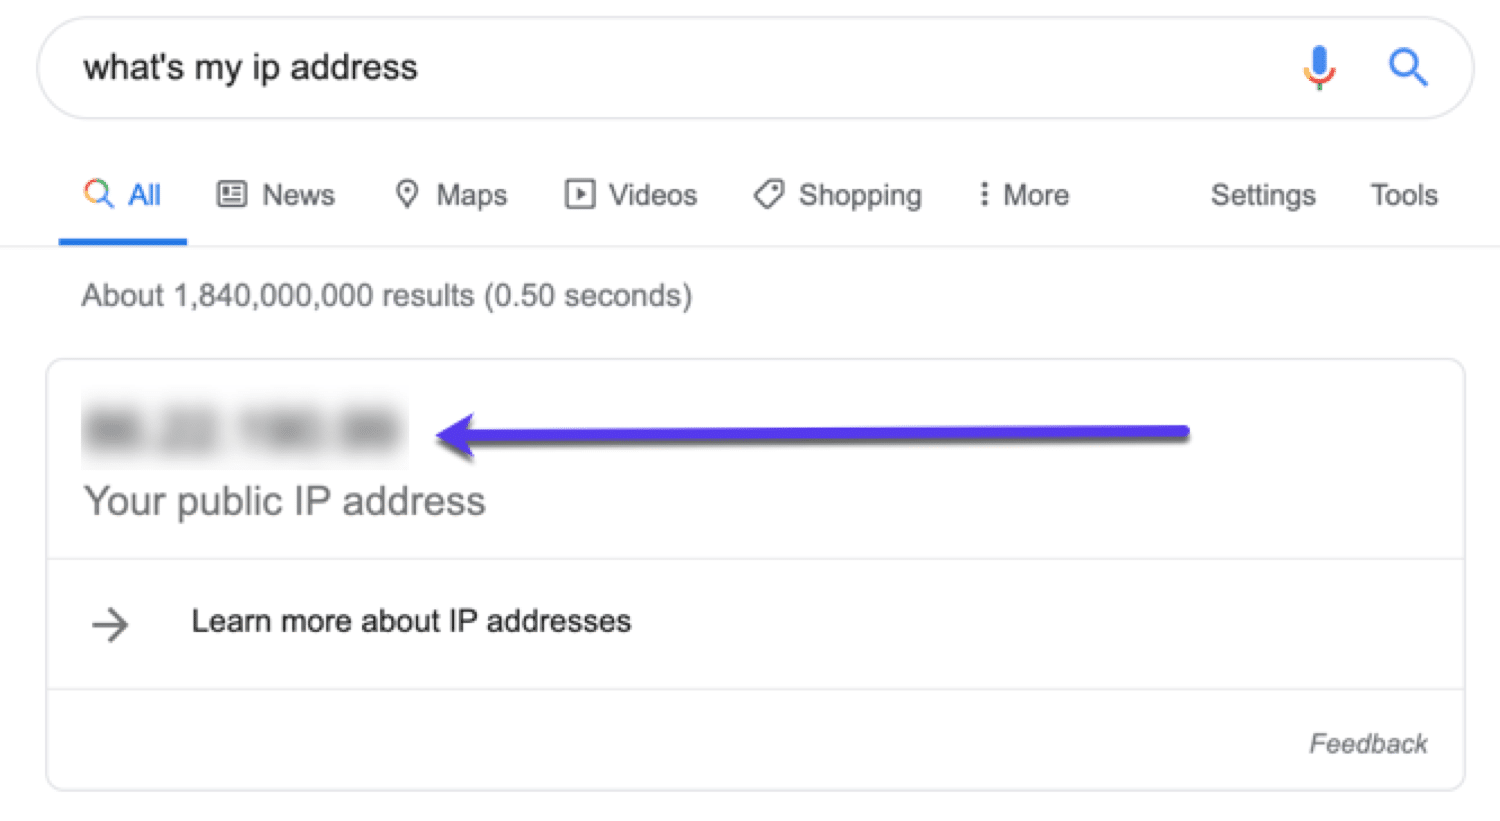 Verwende Google, um deine IP-Adresse schnell zu finden